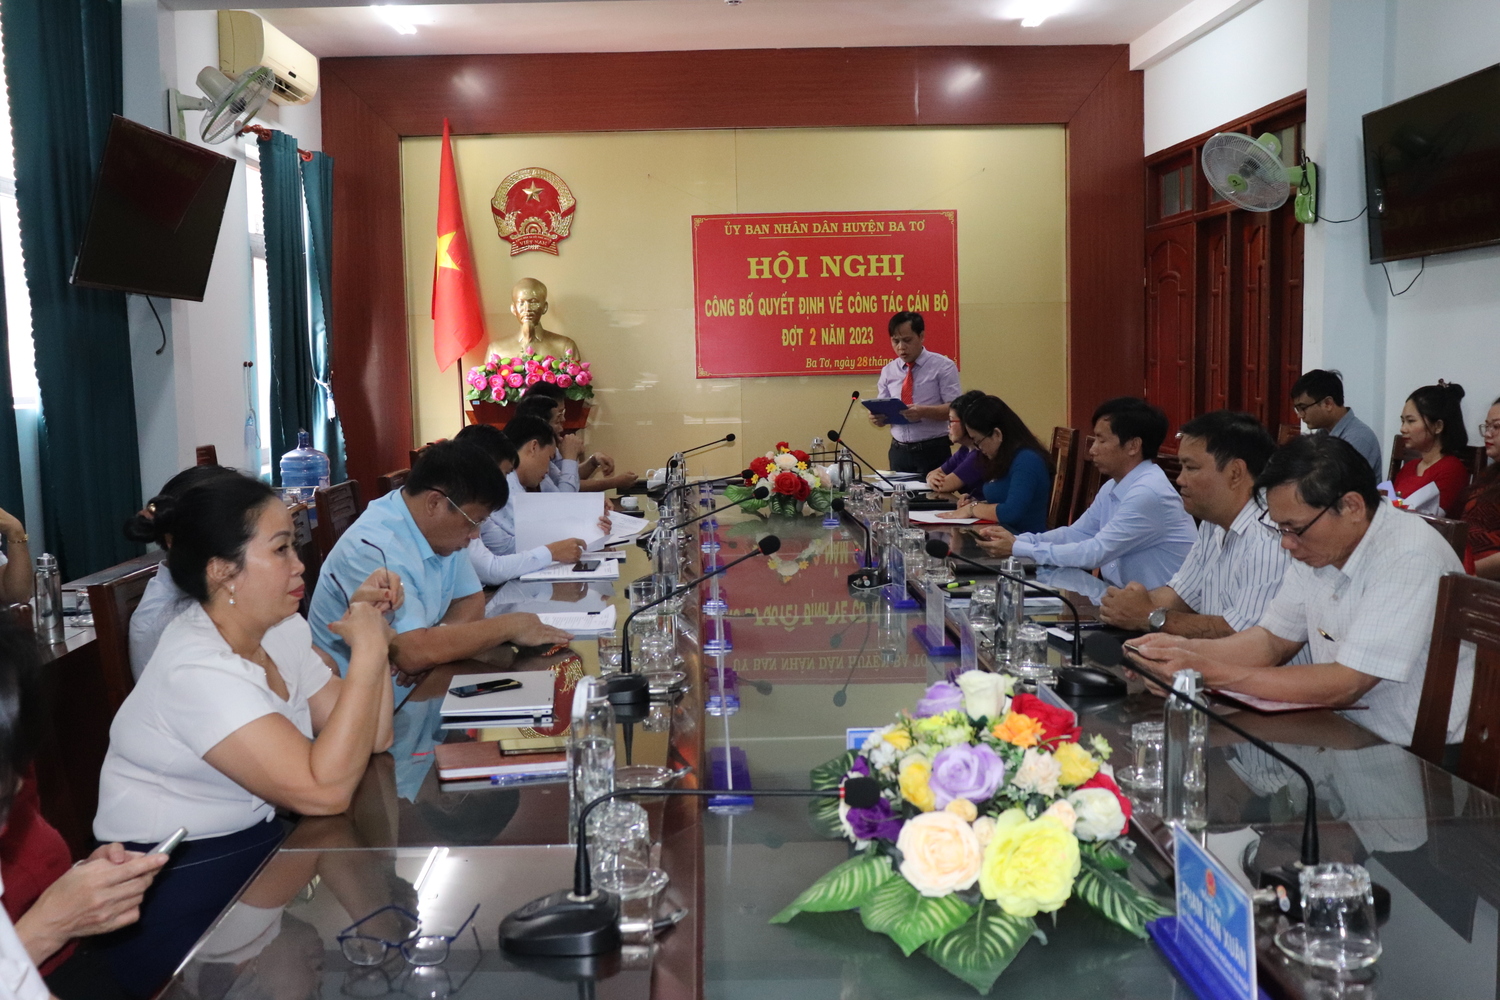 UBND huyện Ba Tơ tổ chức Hội nghị công bố Quyết định về công tác cán bộ đợt 2 năm 2023